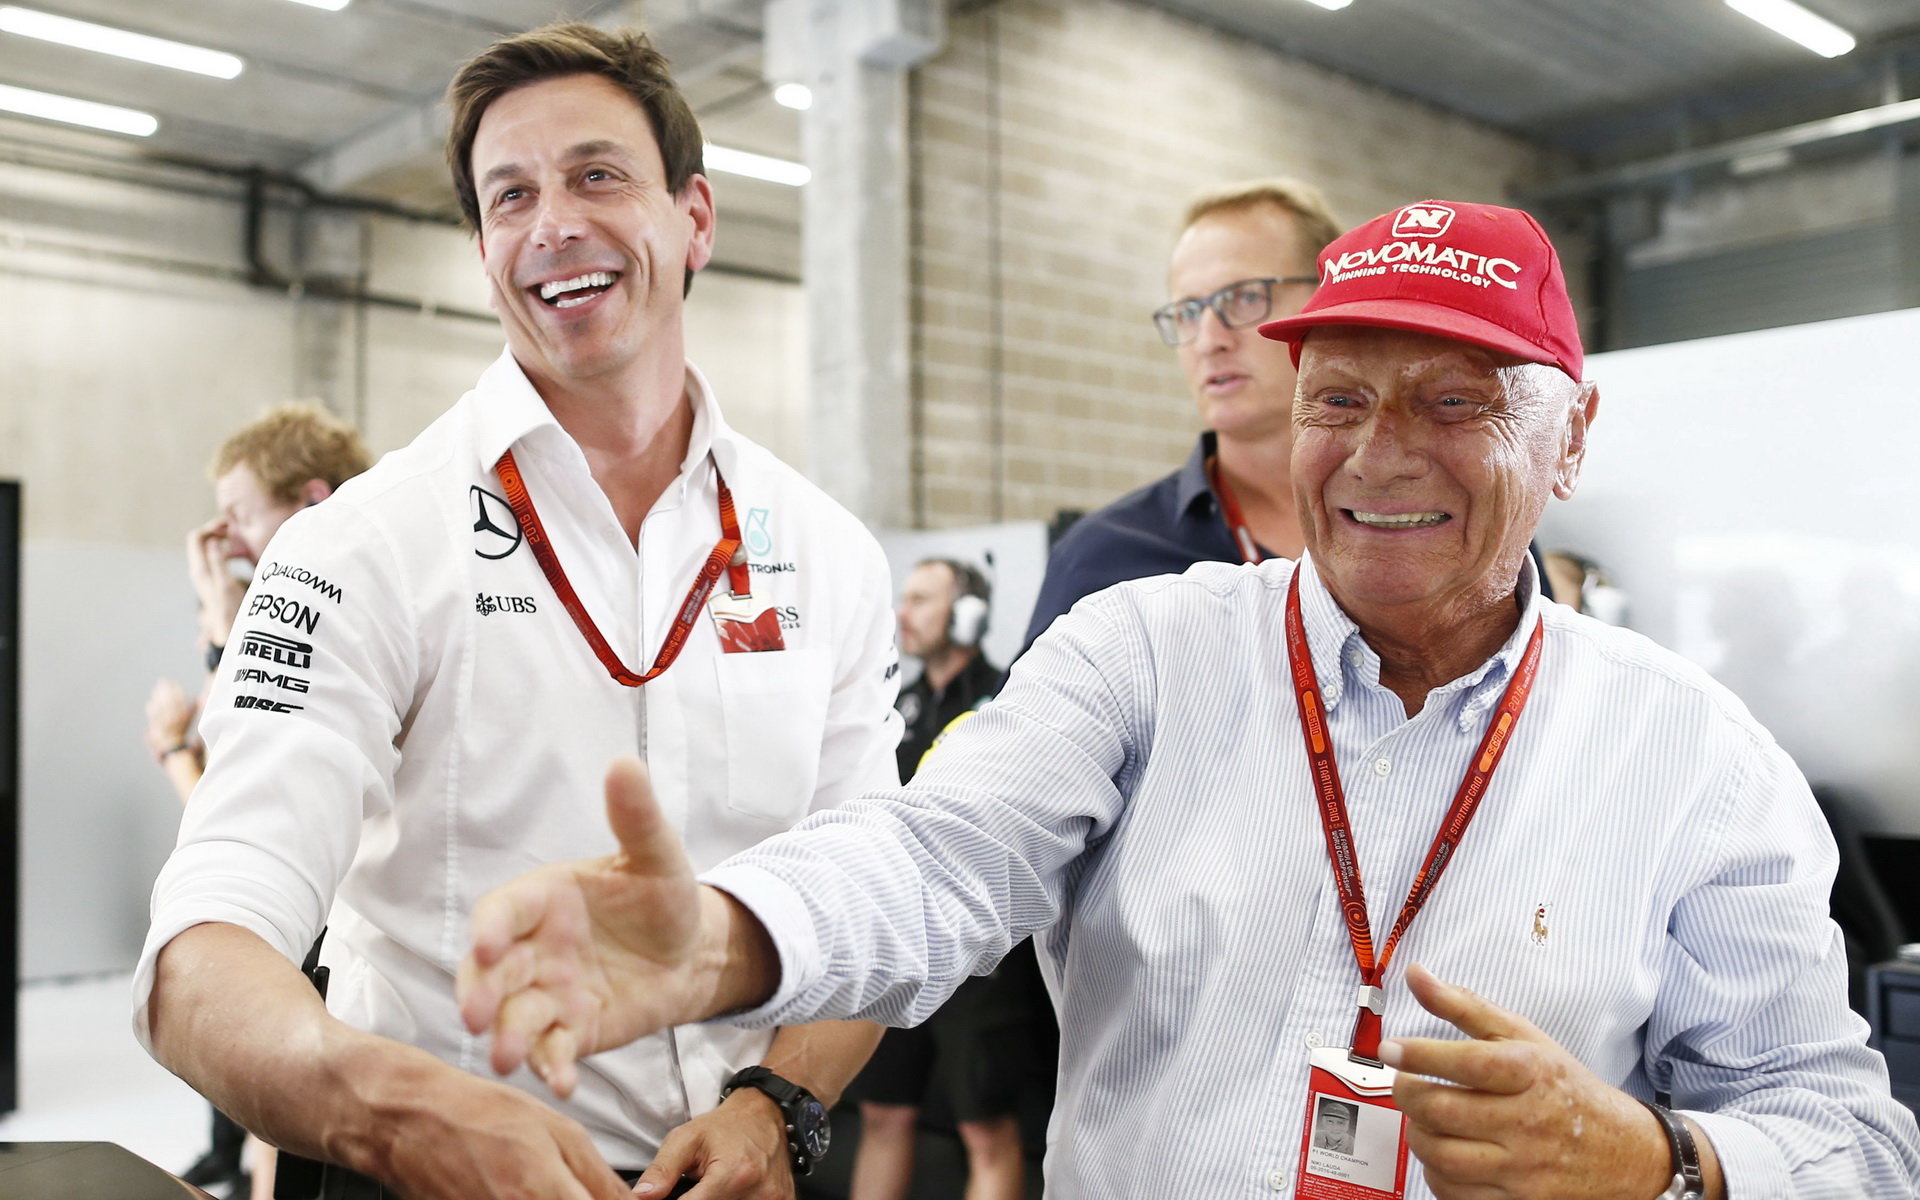 Nehledejte u nás problémy, prostě nejsou - Wolff a Lauda obhajují klima u svého týmu